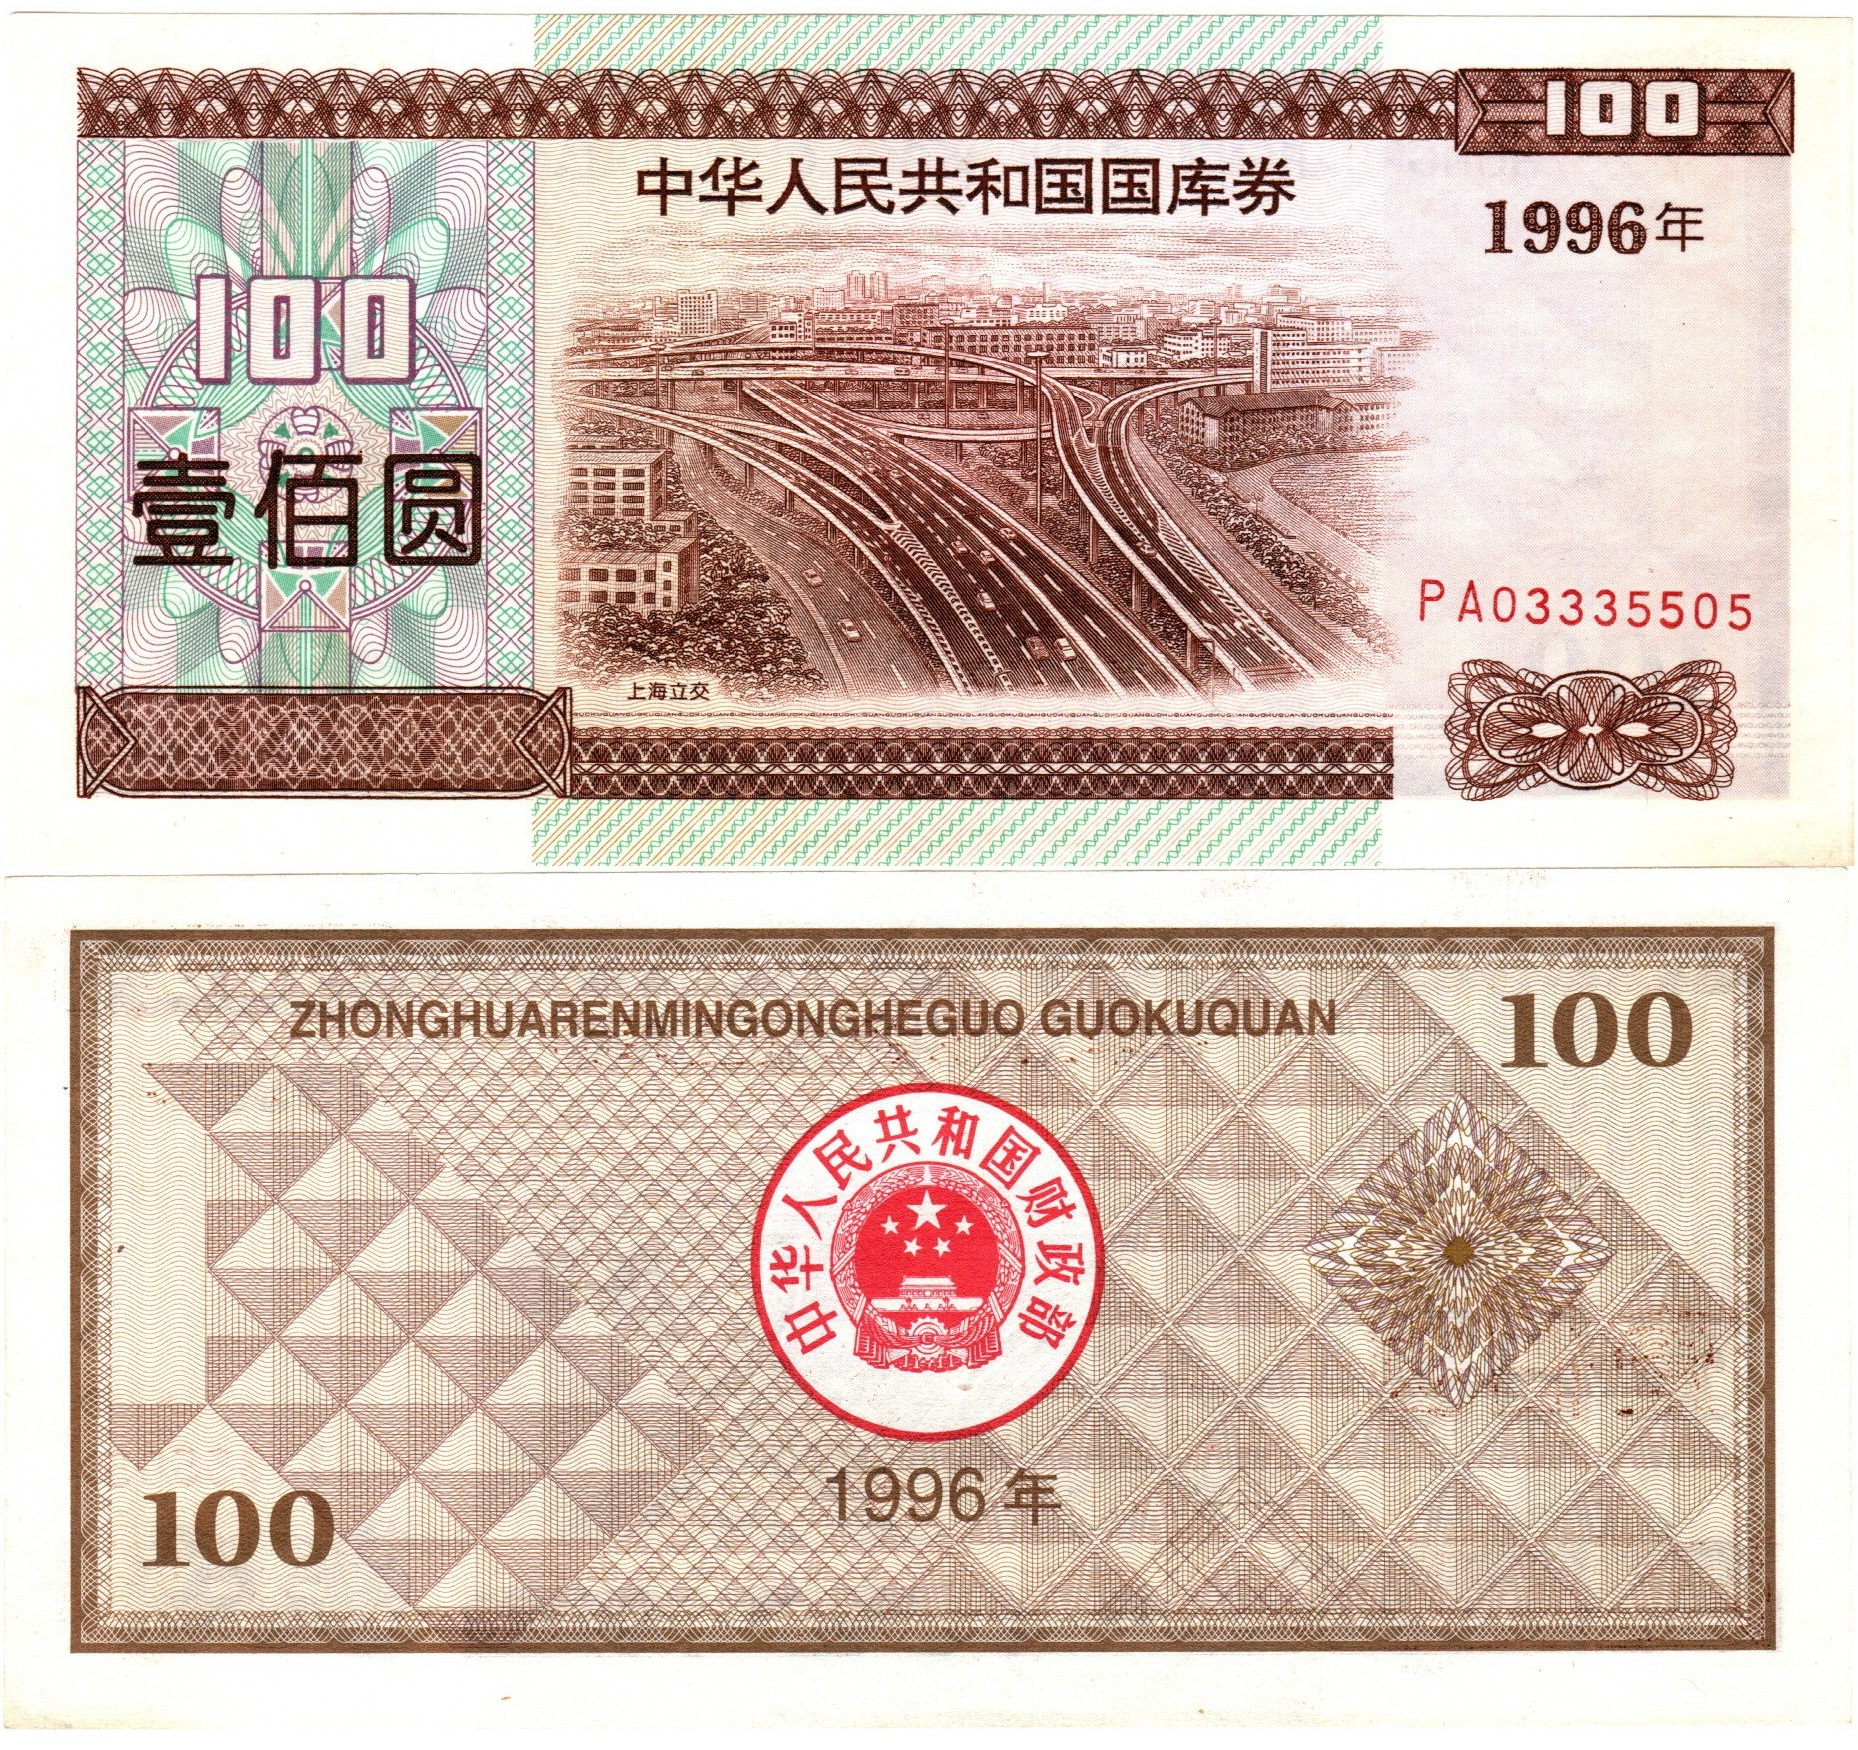 B7240, Treasury Bond of P.R.China, 14.5% Loan, 100 Yuan (Dollars) 1996